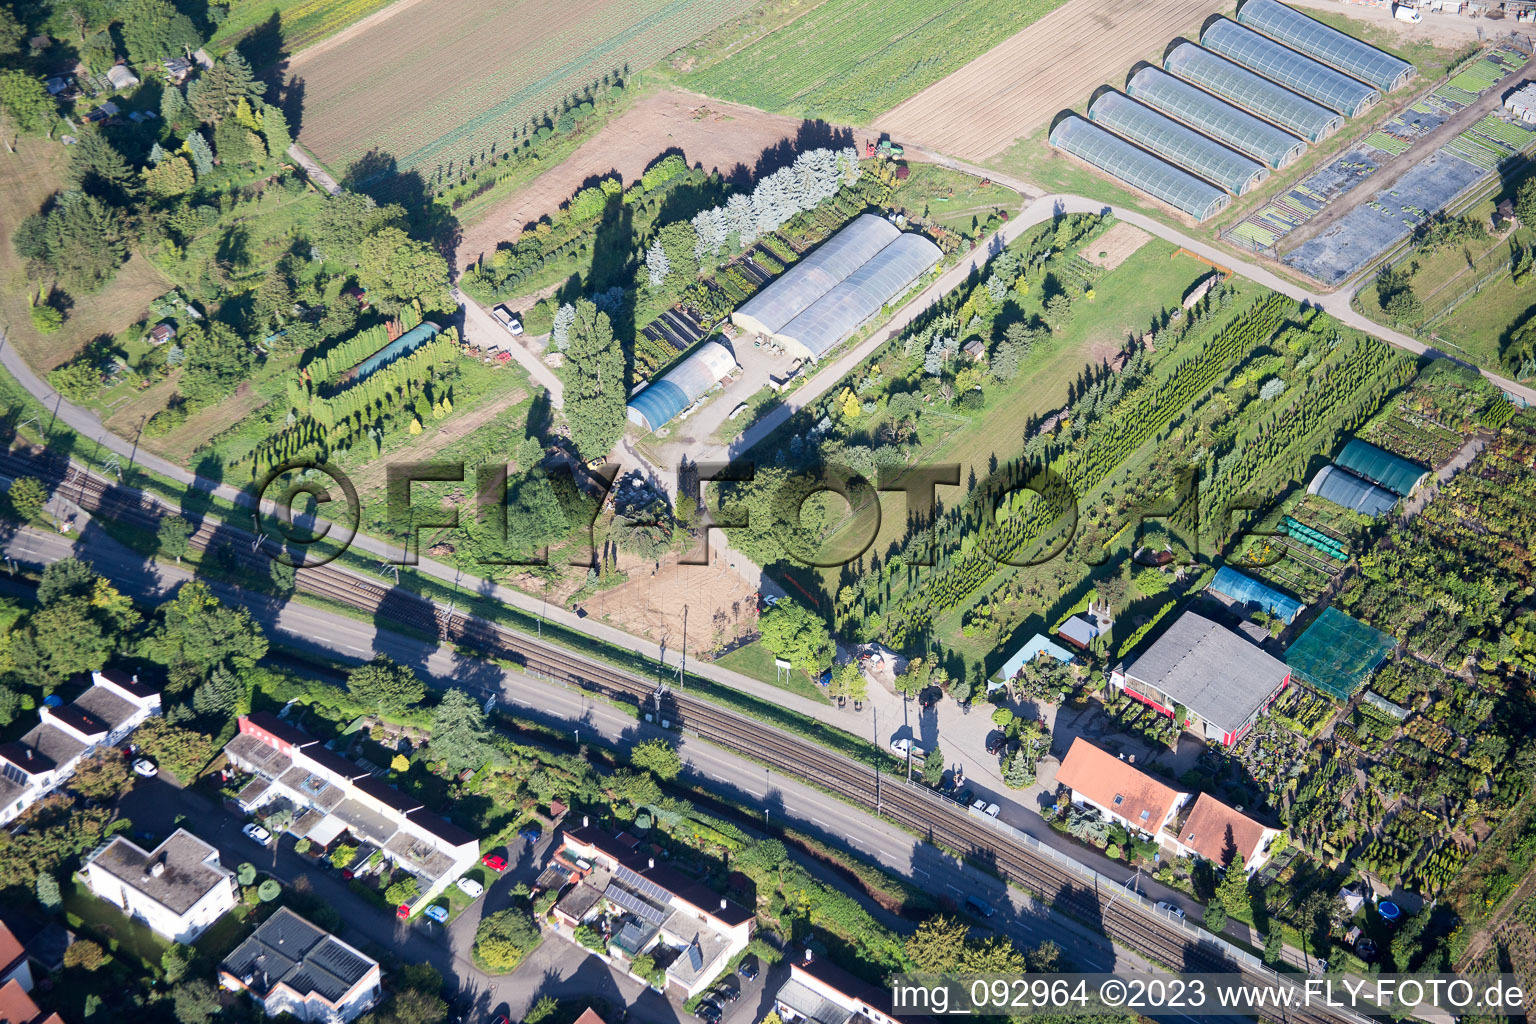 Ortsteil Durlach in Karlsruhe im Bundesland Baden-Württemberg, Deutschland von der Drohne aus gesehen